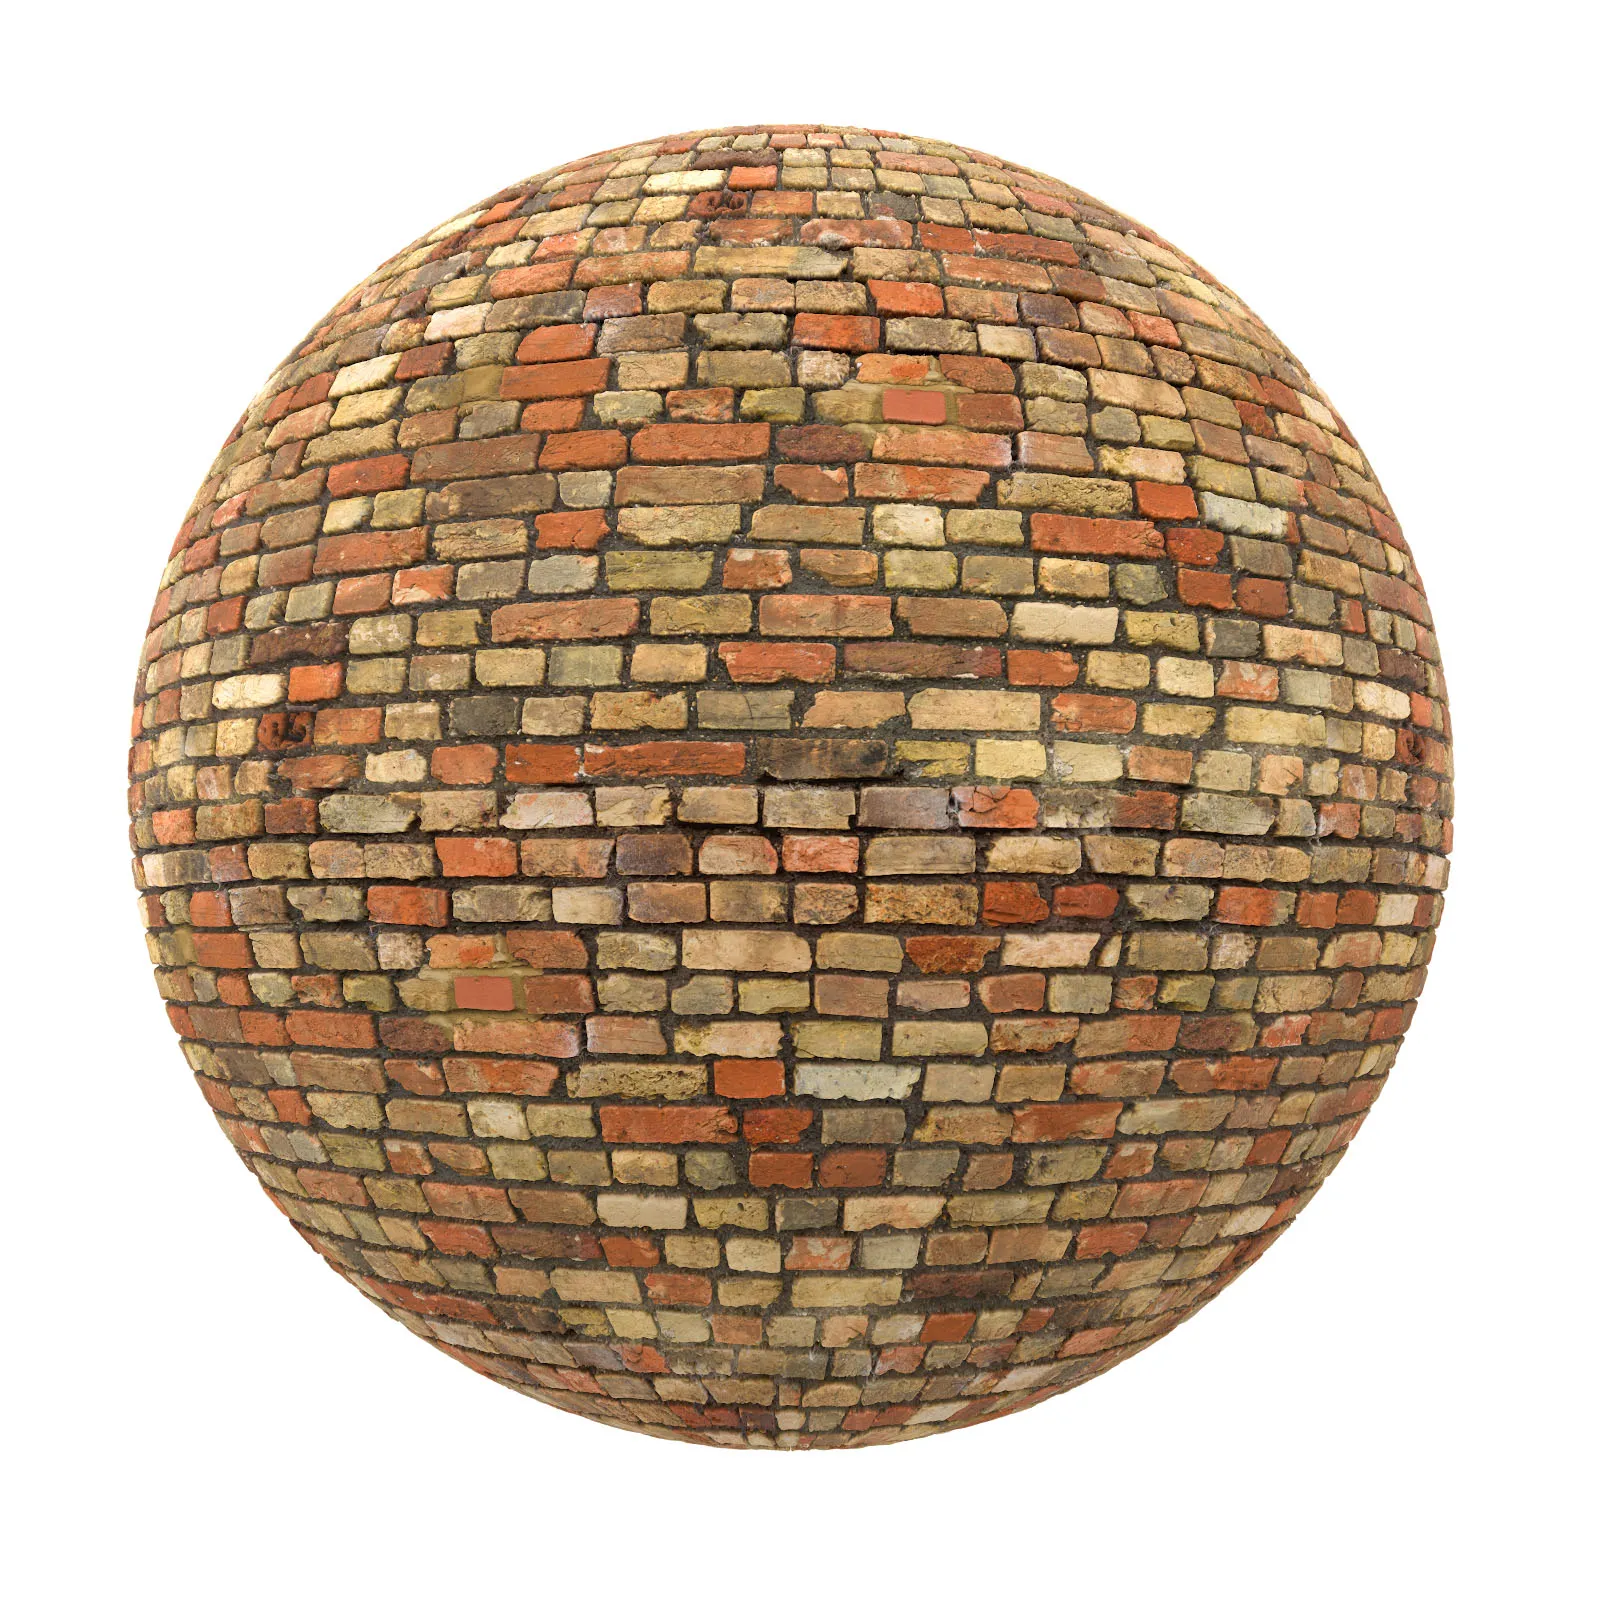 PBR CGAXIS TEXTURES – BRICK – Old Brick Wall 1